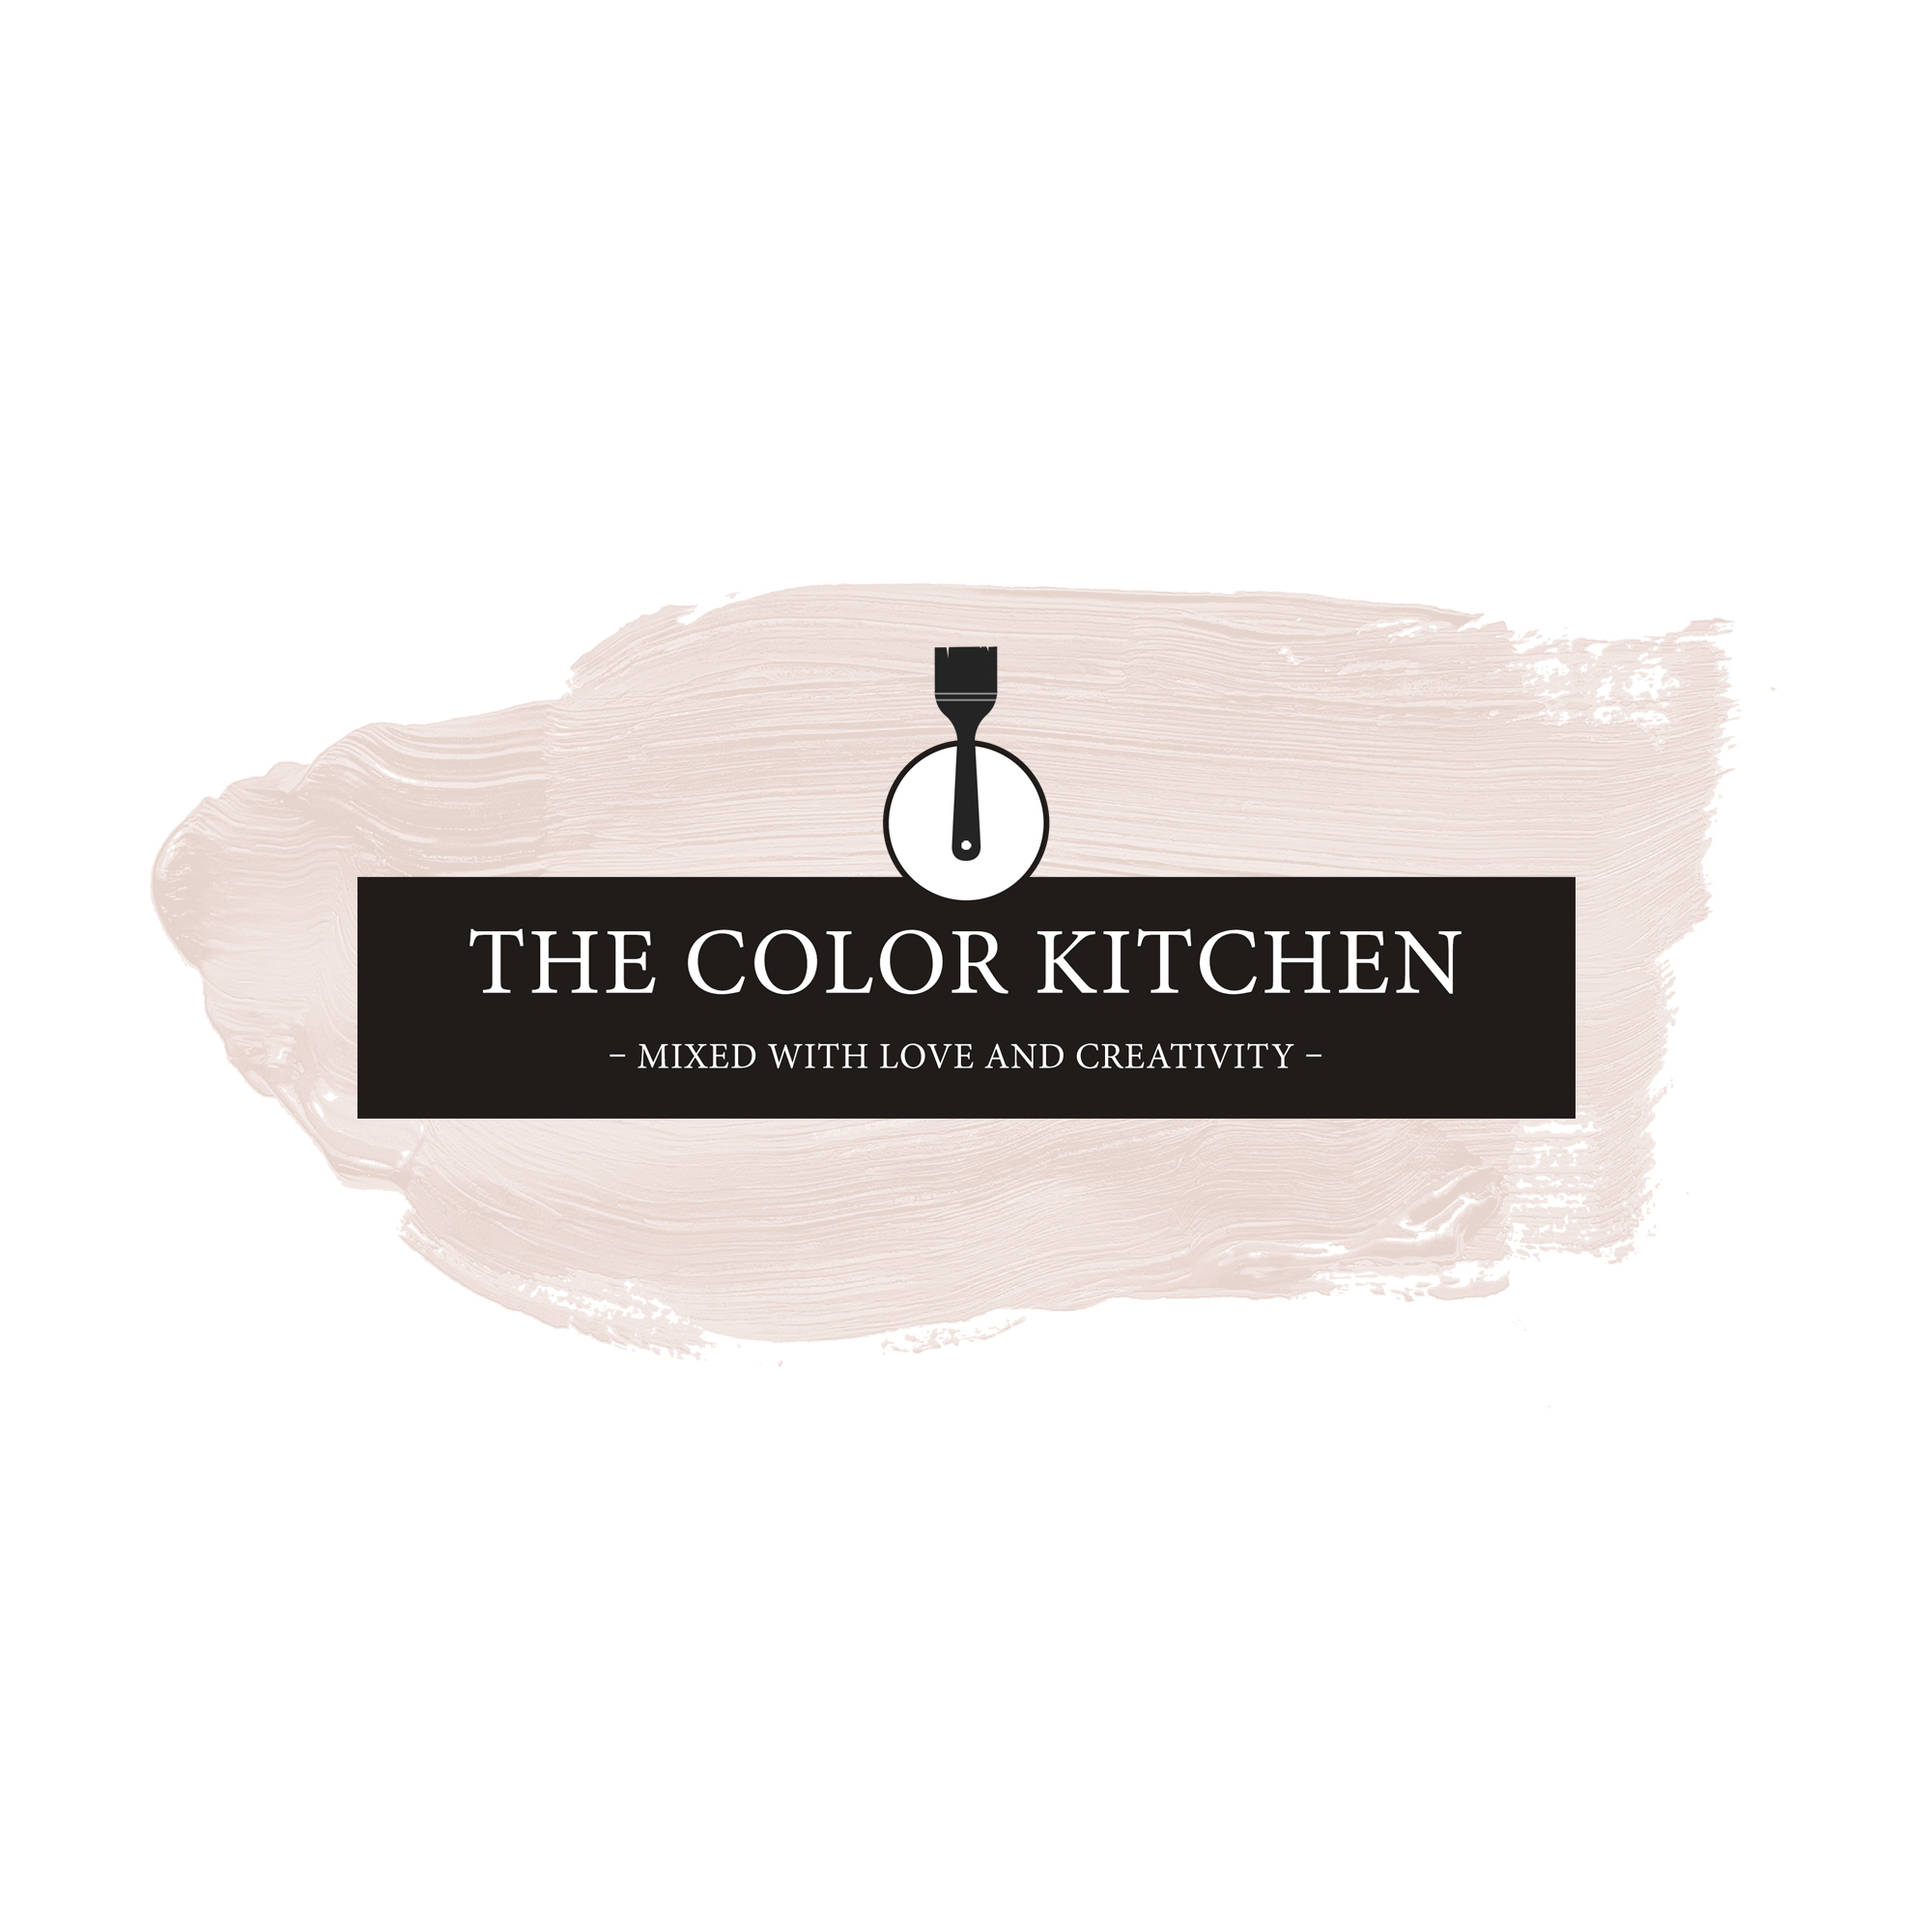 The Color Kitchen Cotton Candy 5 l